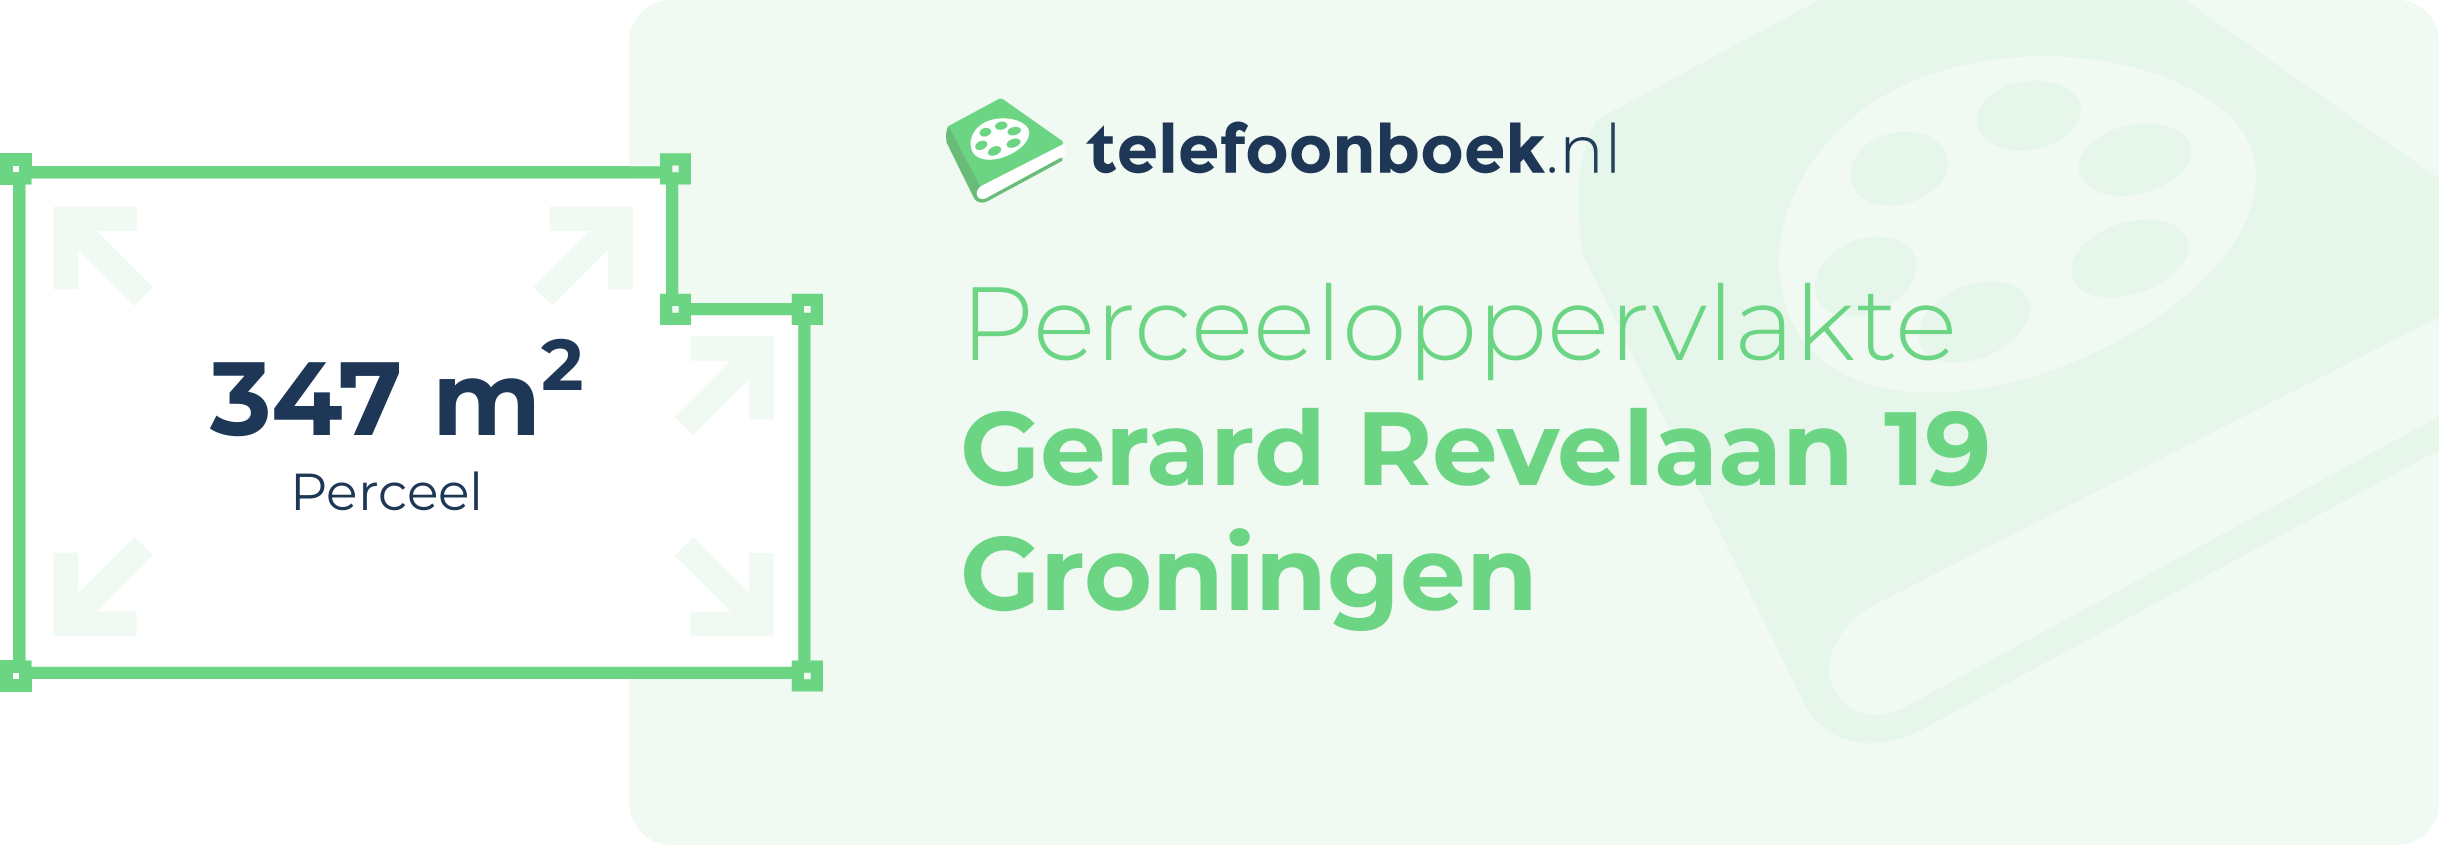 Perceeloppervlakte Gerard Revelaan 19 Groningen